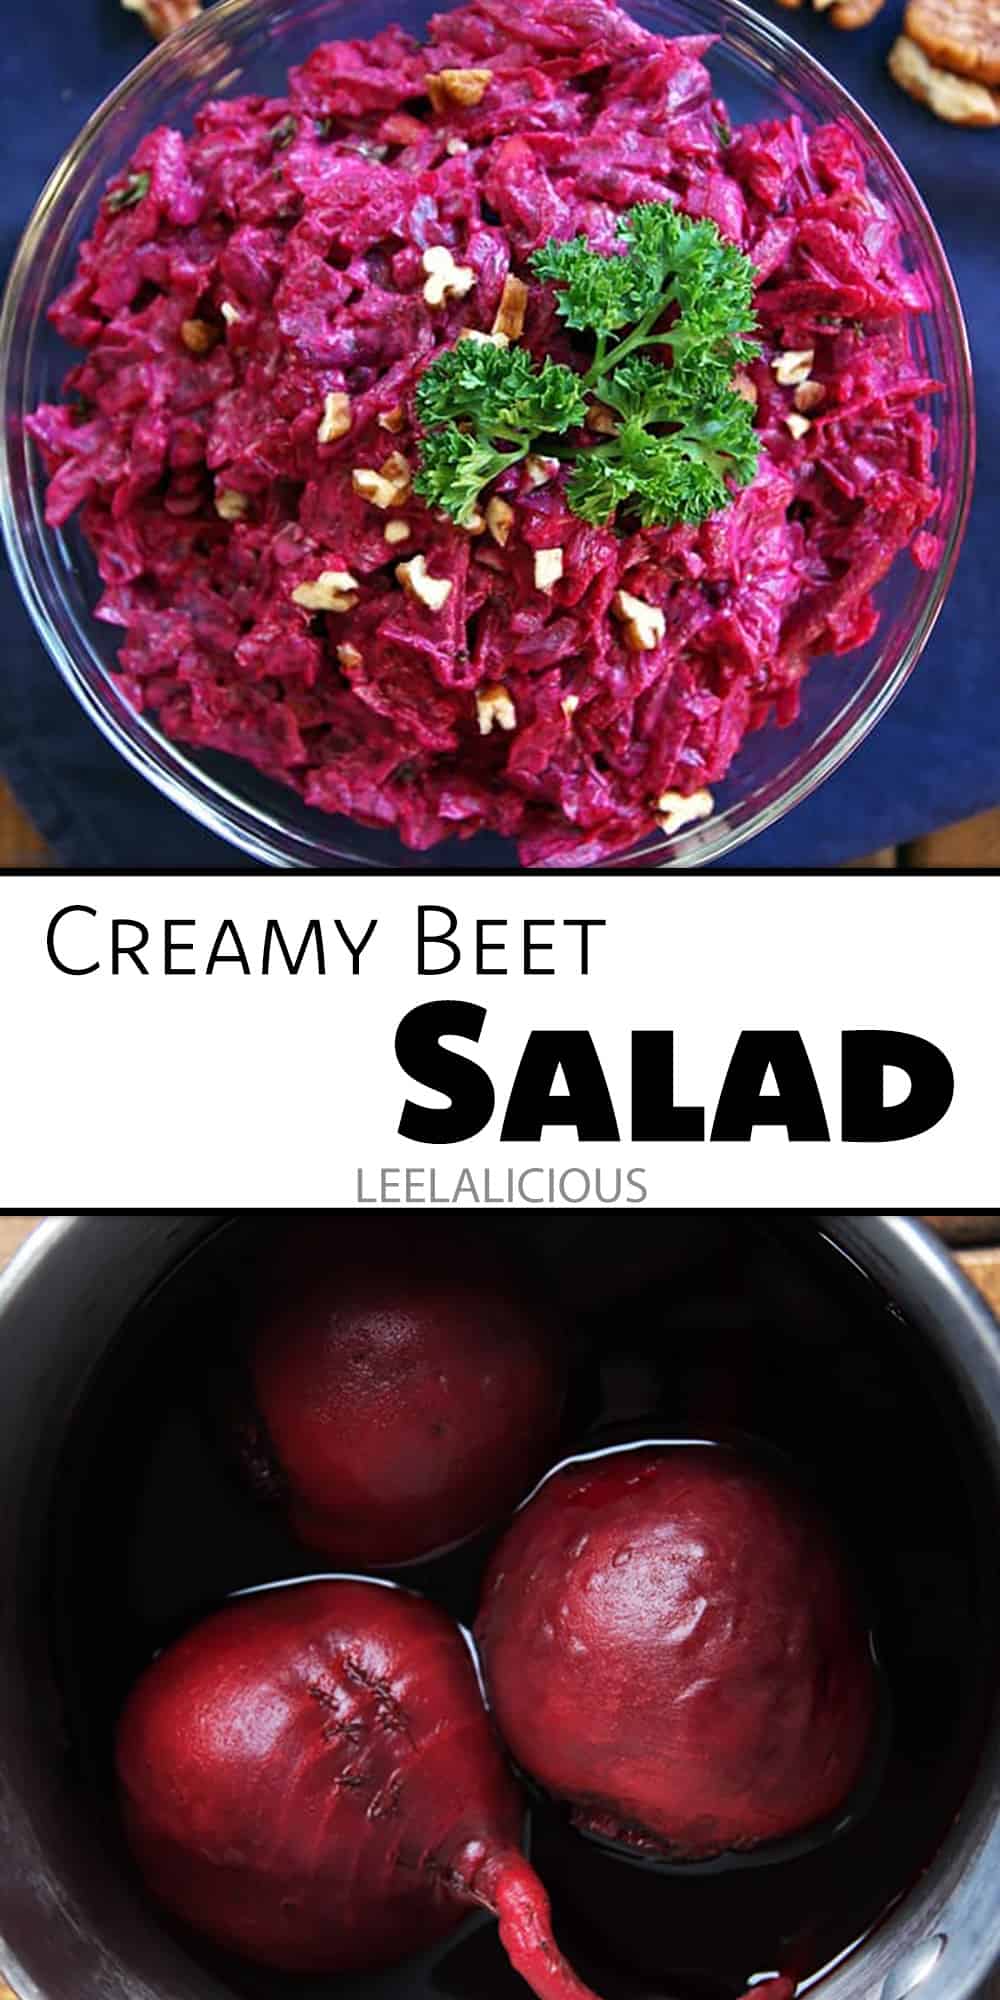 Creamy Russian Beet Salad